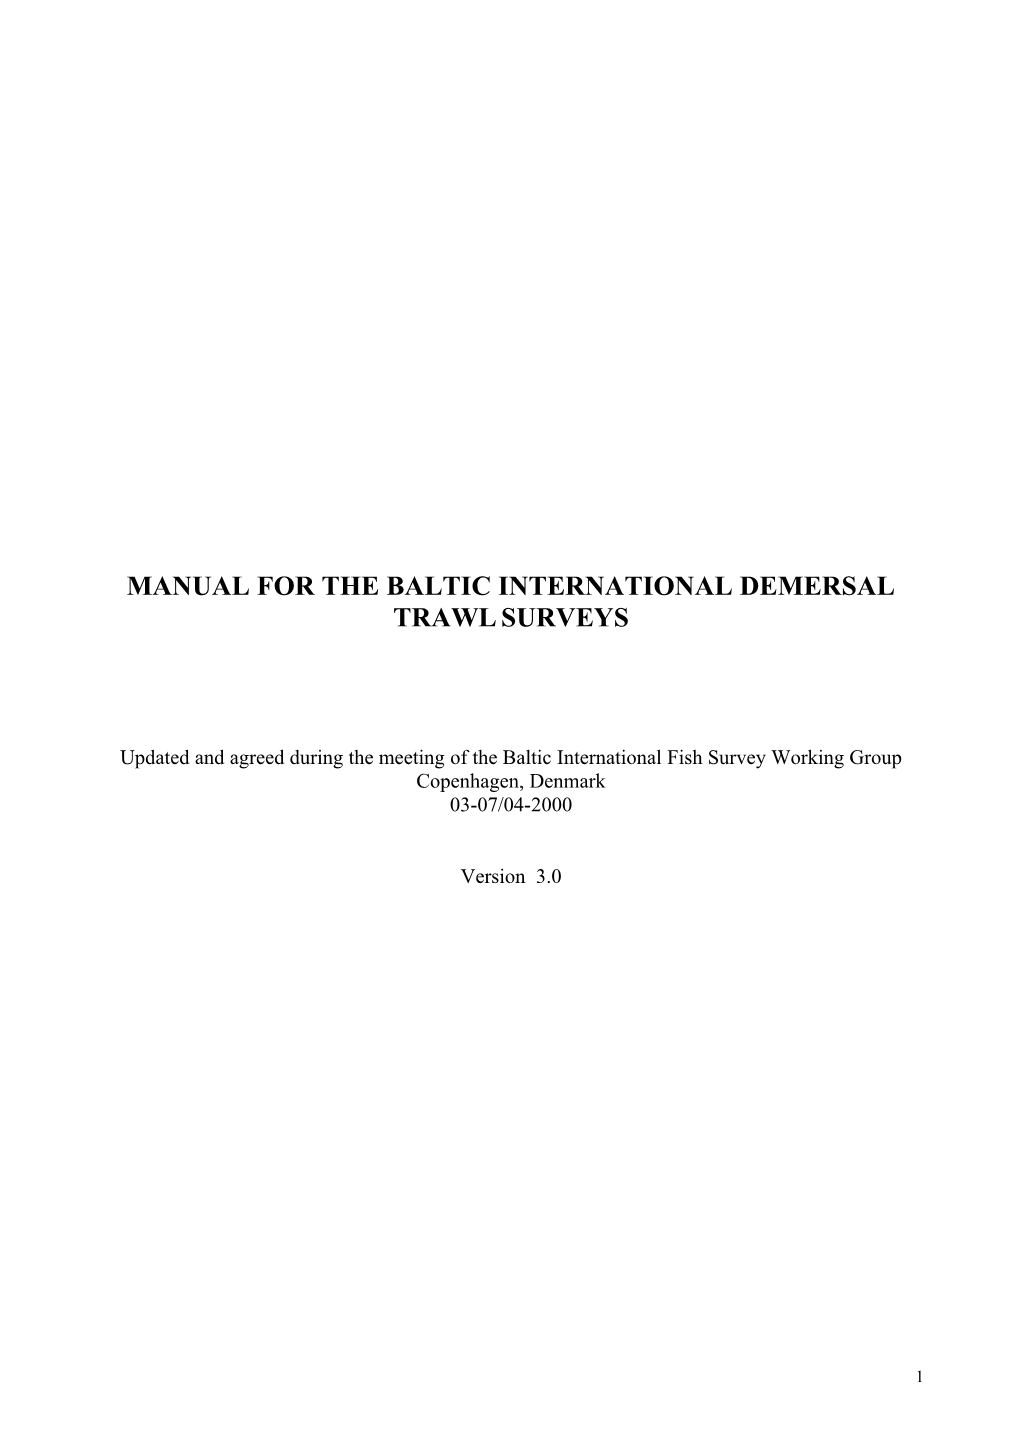 Manual for the Baltic International Demersal Trawlsurveys